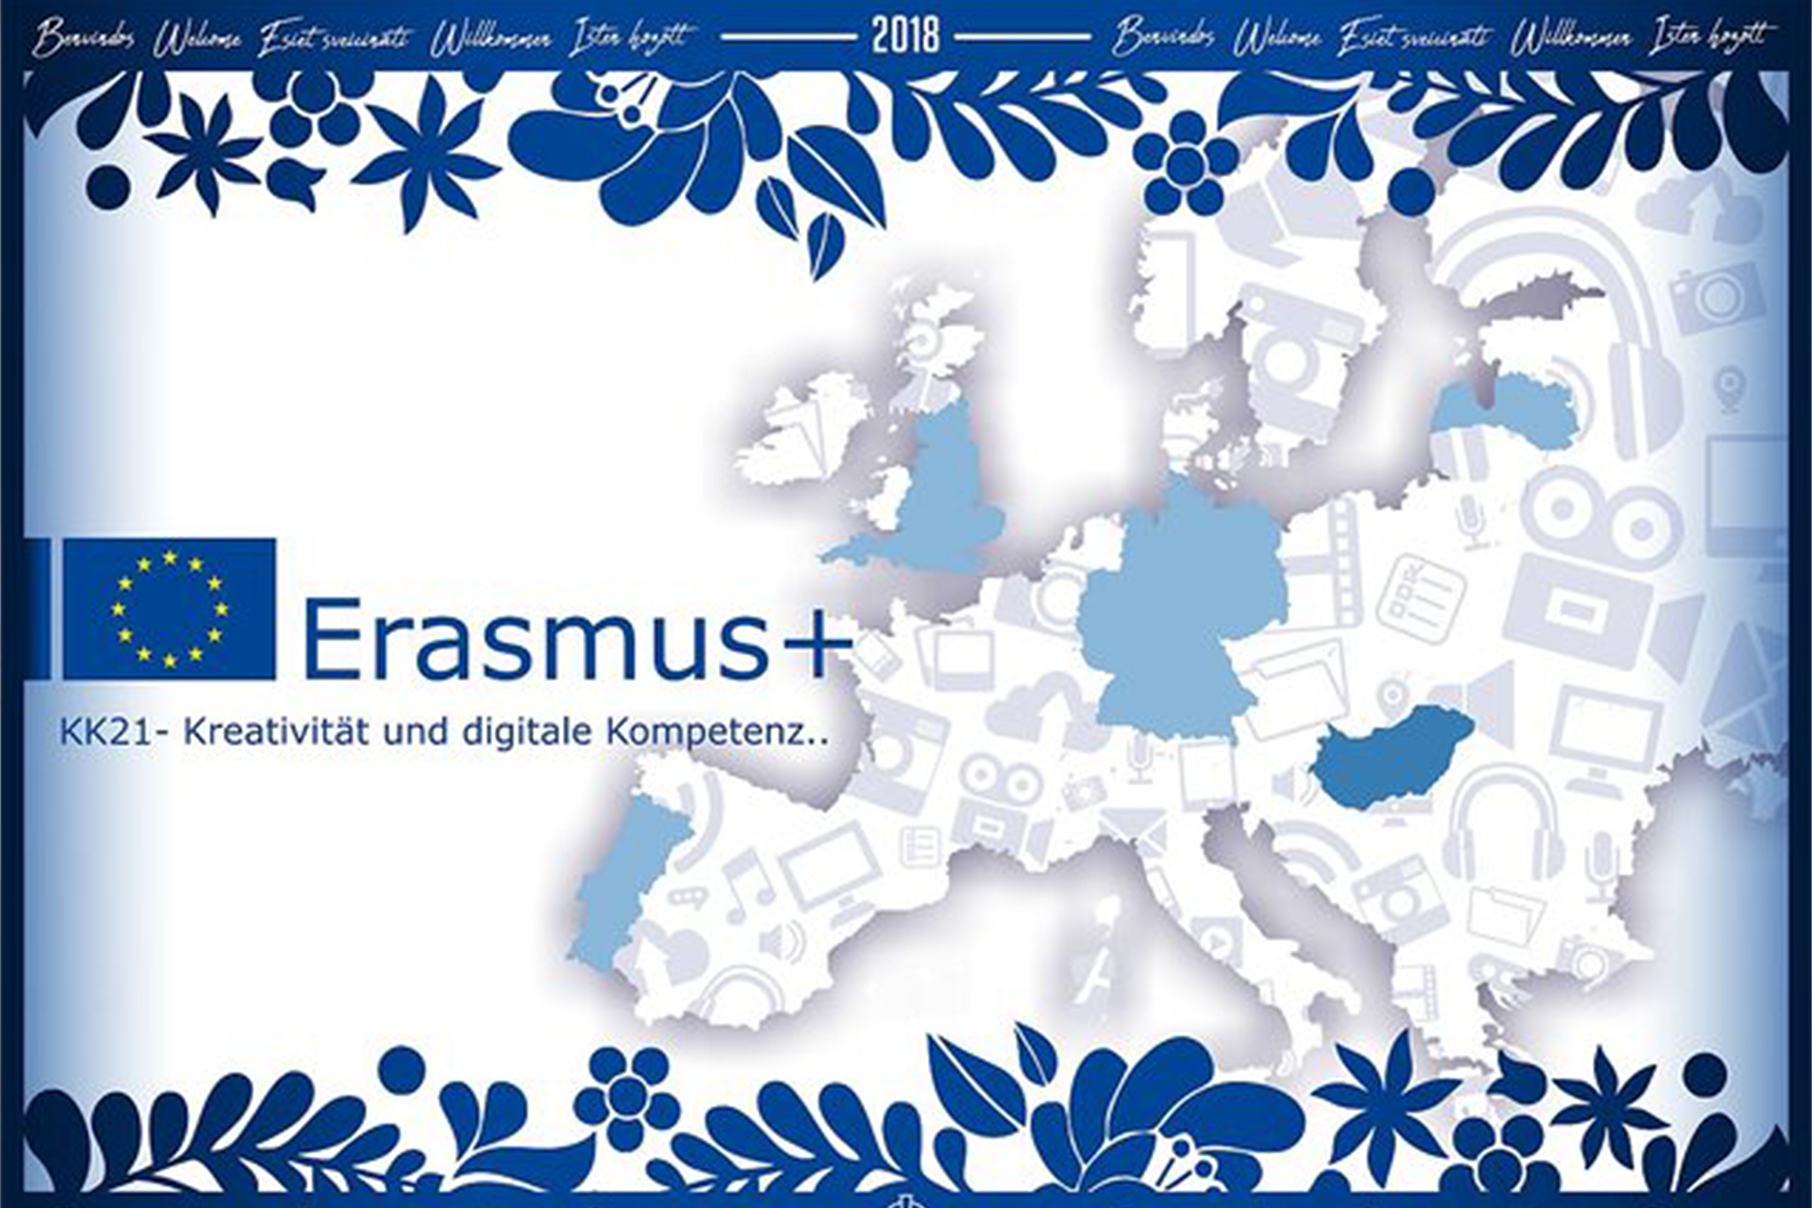 Erasmus+ bot spannende Online-Aktivitäten